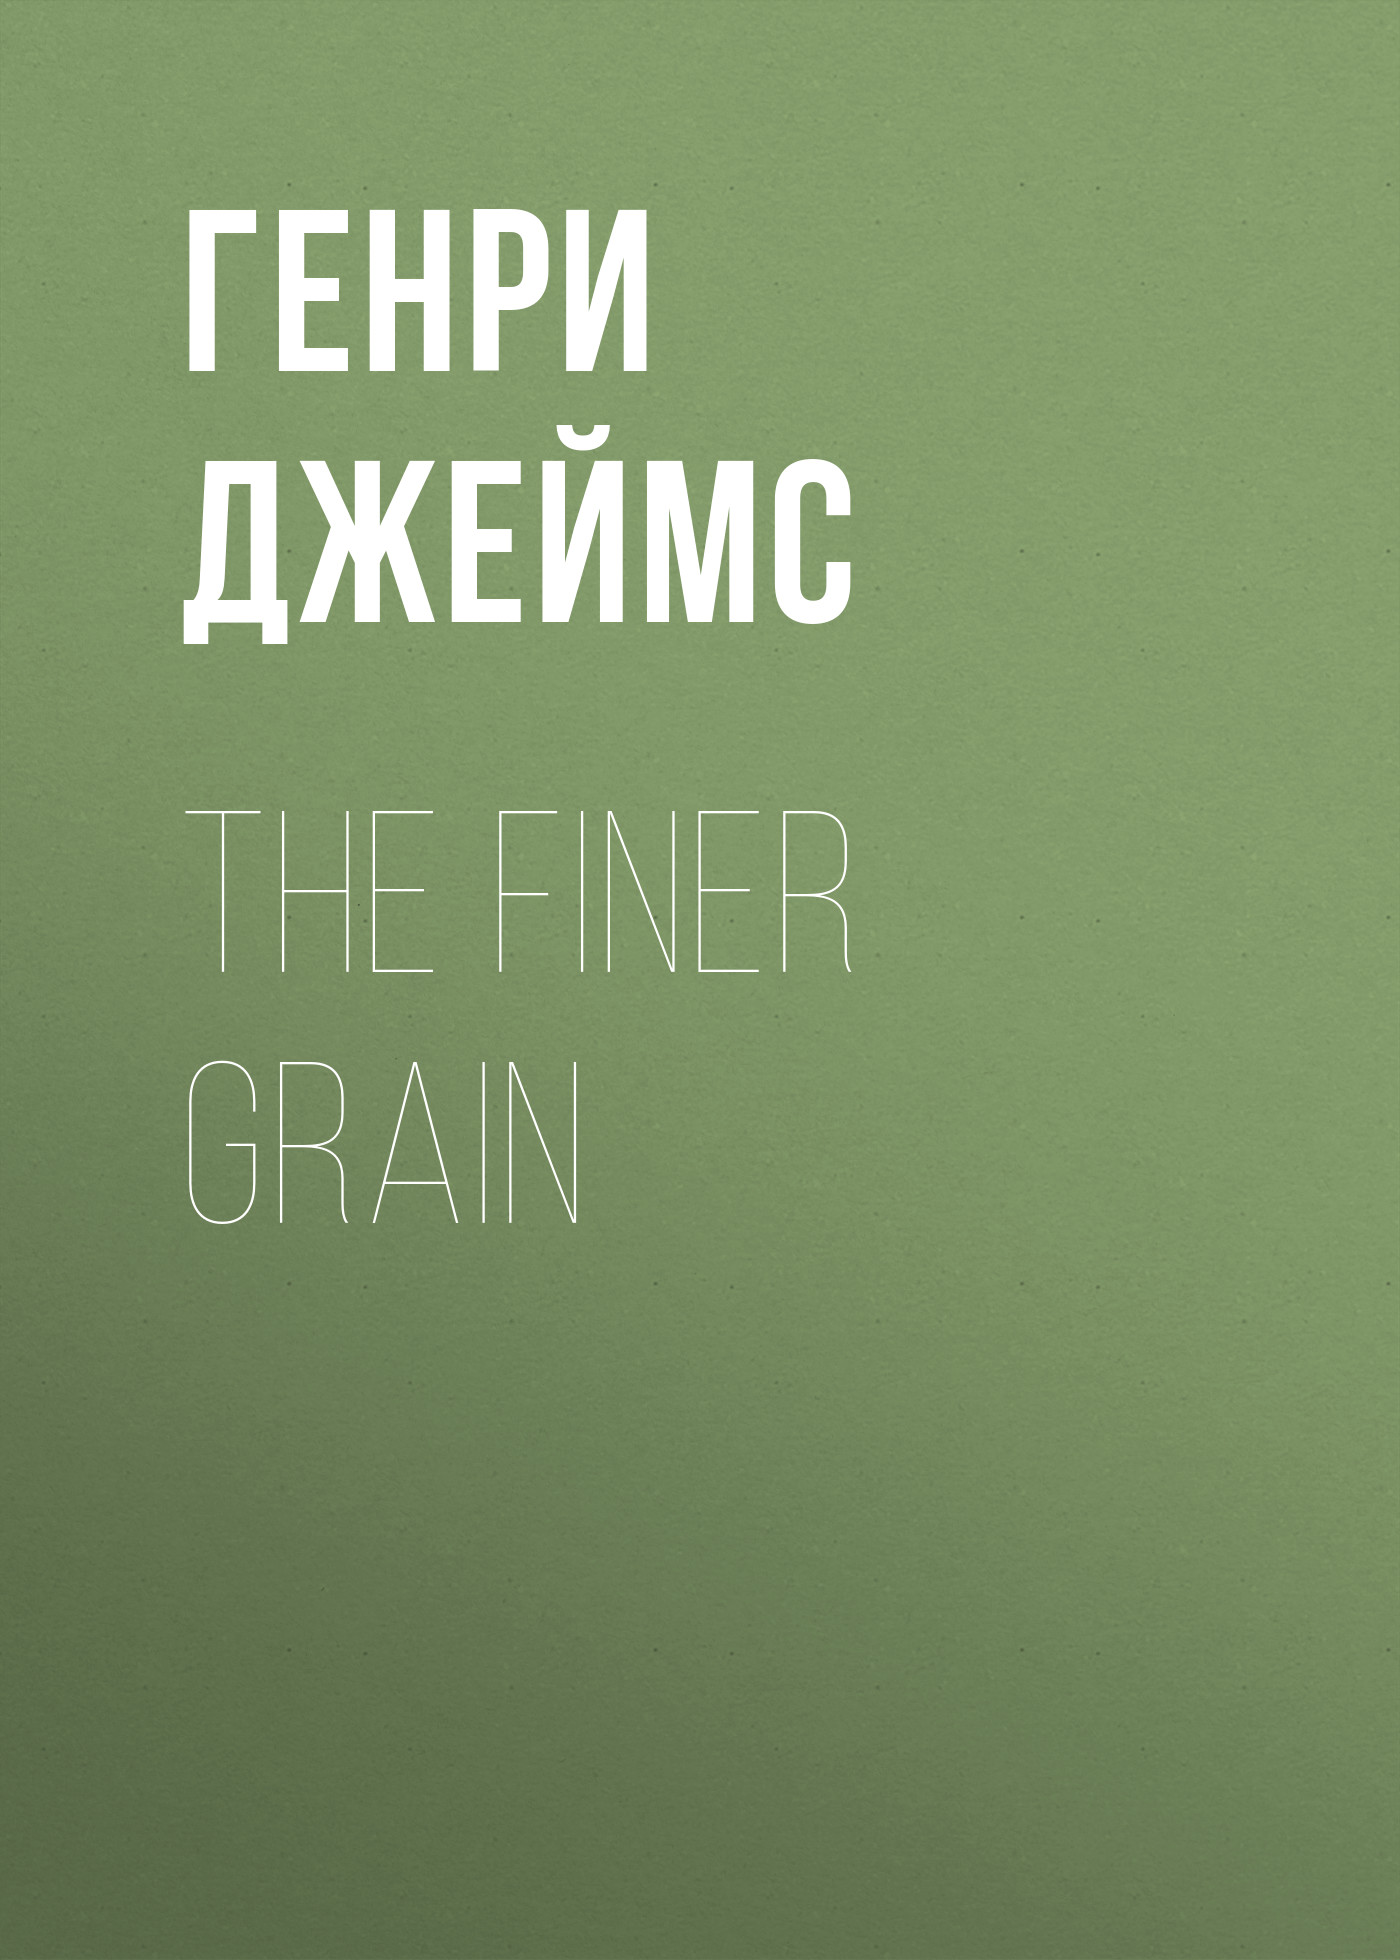 Книга The Finer Grain из серии , созданная Генри Джеймс, может относится к жанру Литература 19 века, Зарубежная старинная литература, Зарубежная классика, Зарубежная фантастика. Стоимость электронной книги The Finer Grain с идентификатором 34841630 составляет 0 руб.